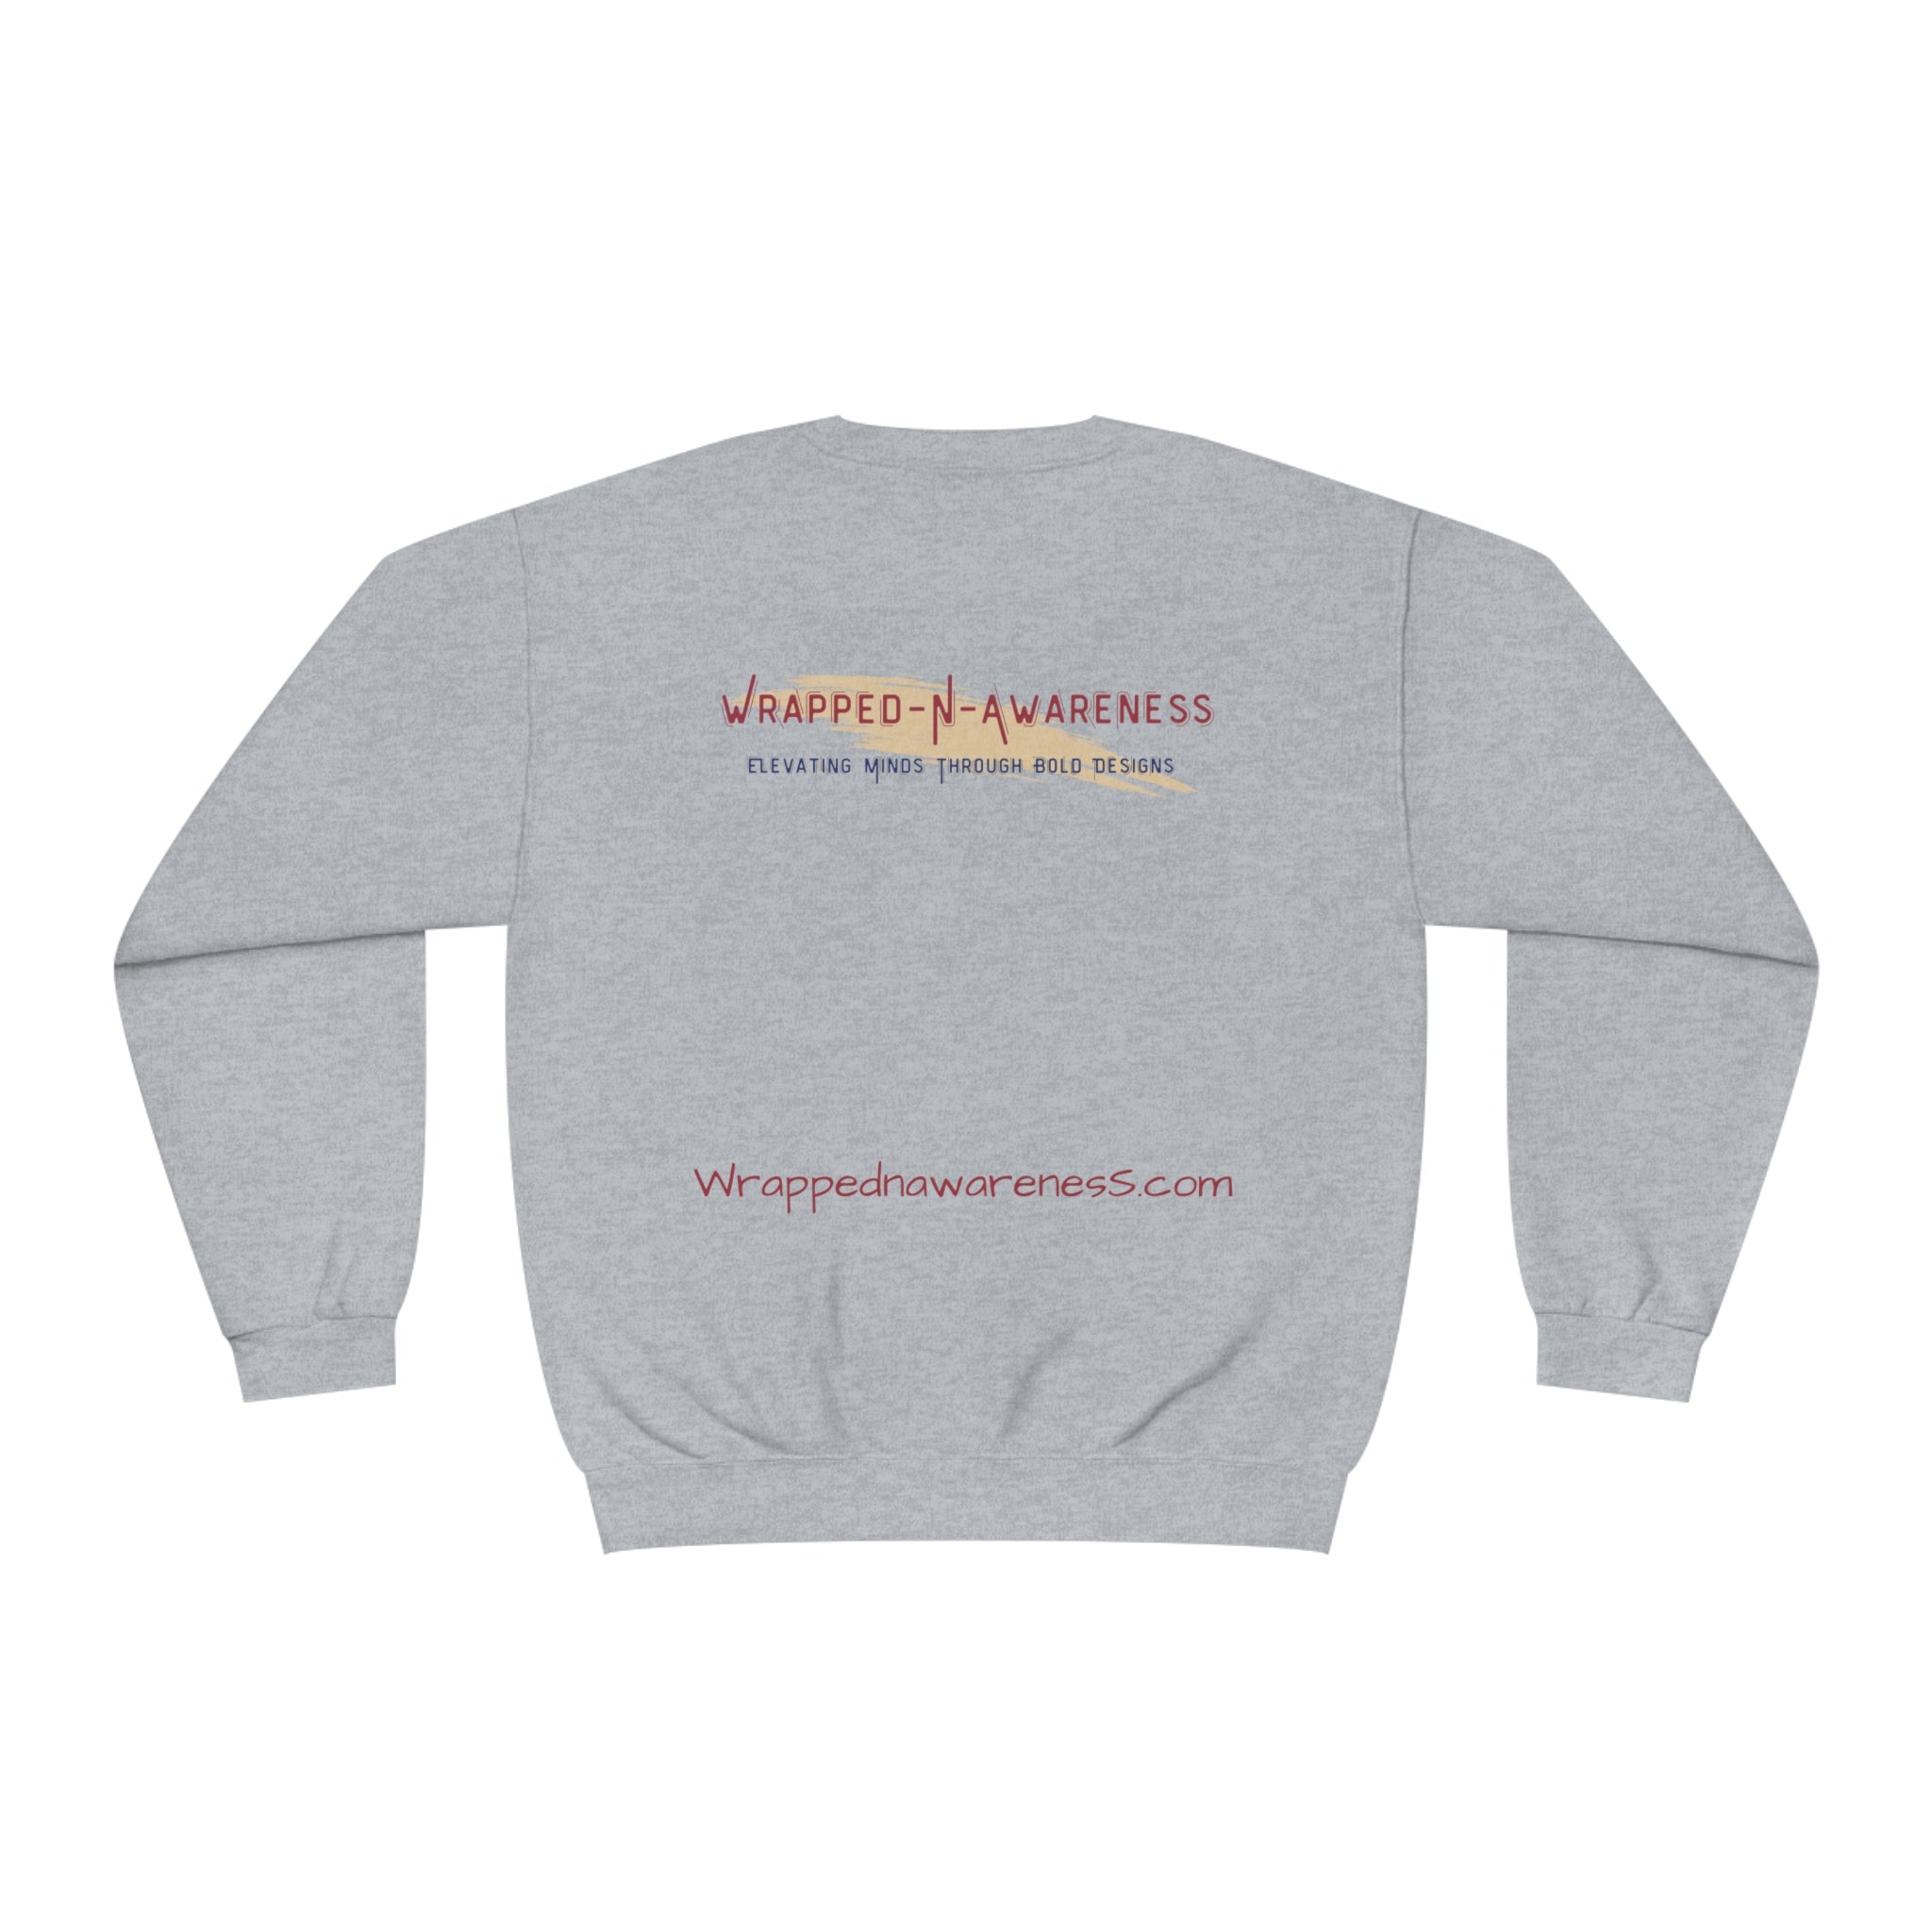 I Embrace Growth Fleece Sweatshirt: Comfort & Style Sandstone Comfy Sweater Cozy Sweatshirt Crewneck Sweatshirt Fleece Pullover Graphic Sweatshirt Men's Sweatshirt Streatwear Sweatshirt Warm Outerwear Women's Sweatshirt Sweatshirt 13436256940980384318_2048 Printify